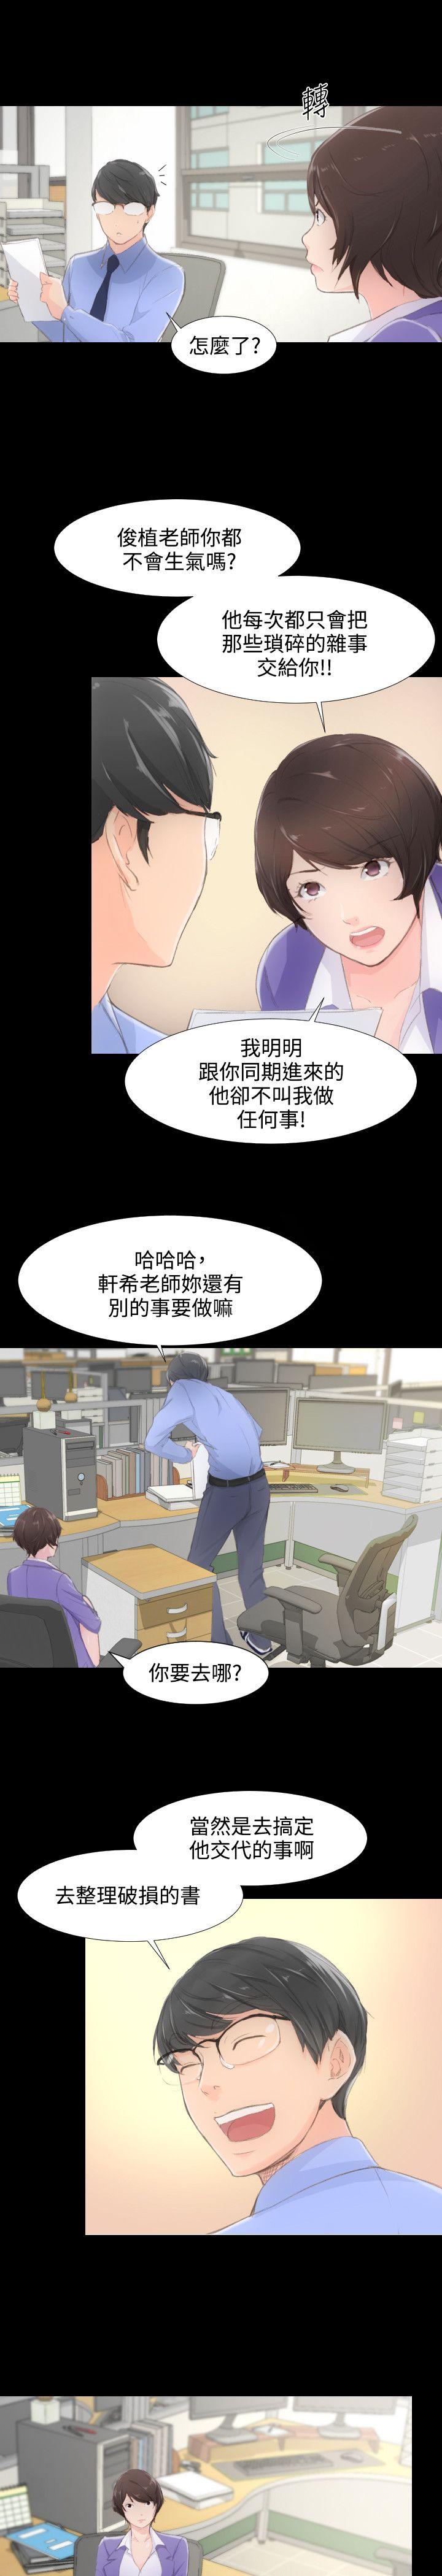 韩国污漫画 成人的滋味 第1话 6